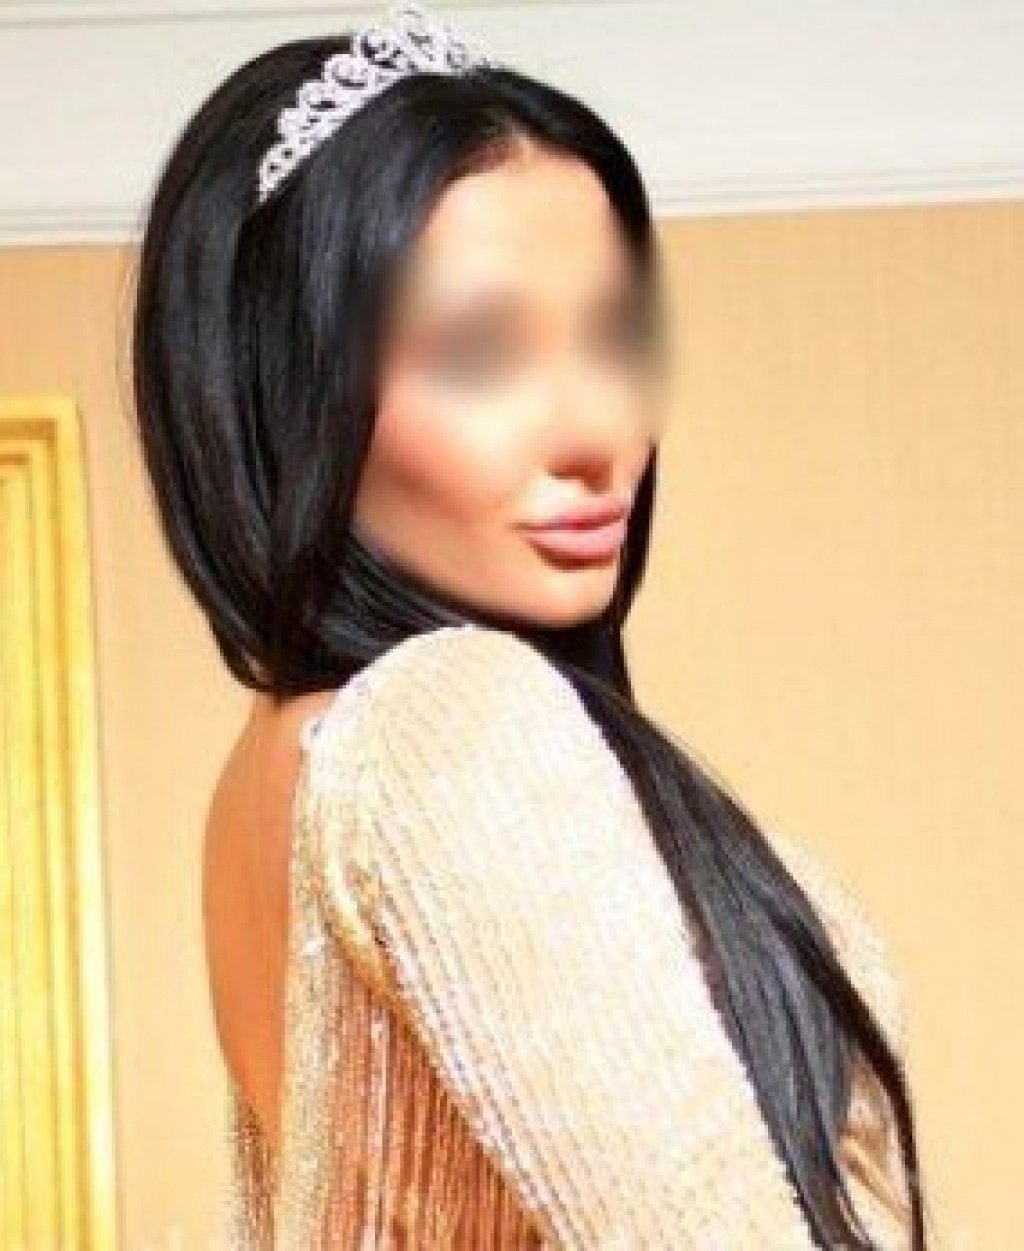 Катюша: Проститутка-индивидуалка во Владивостоке